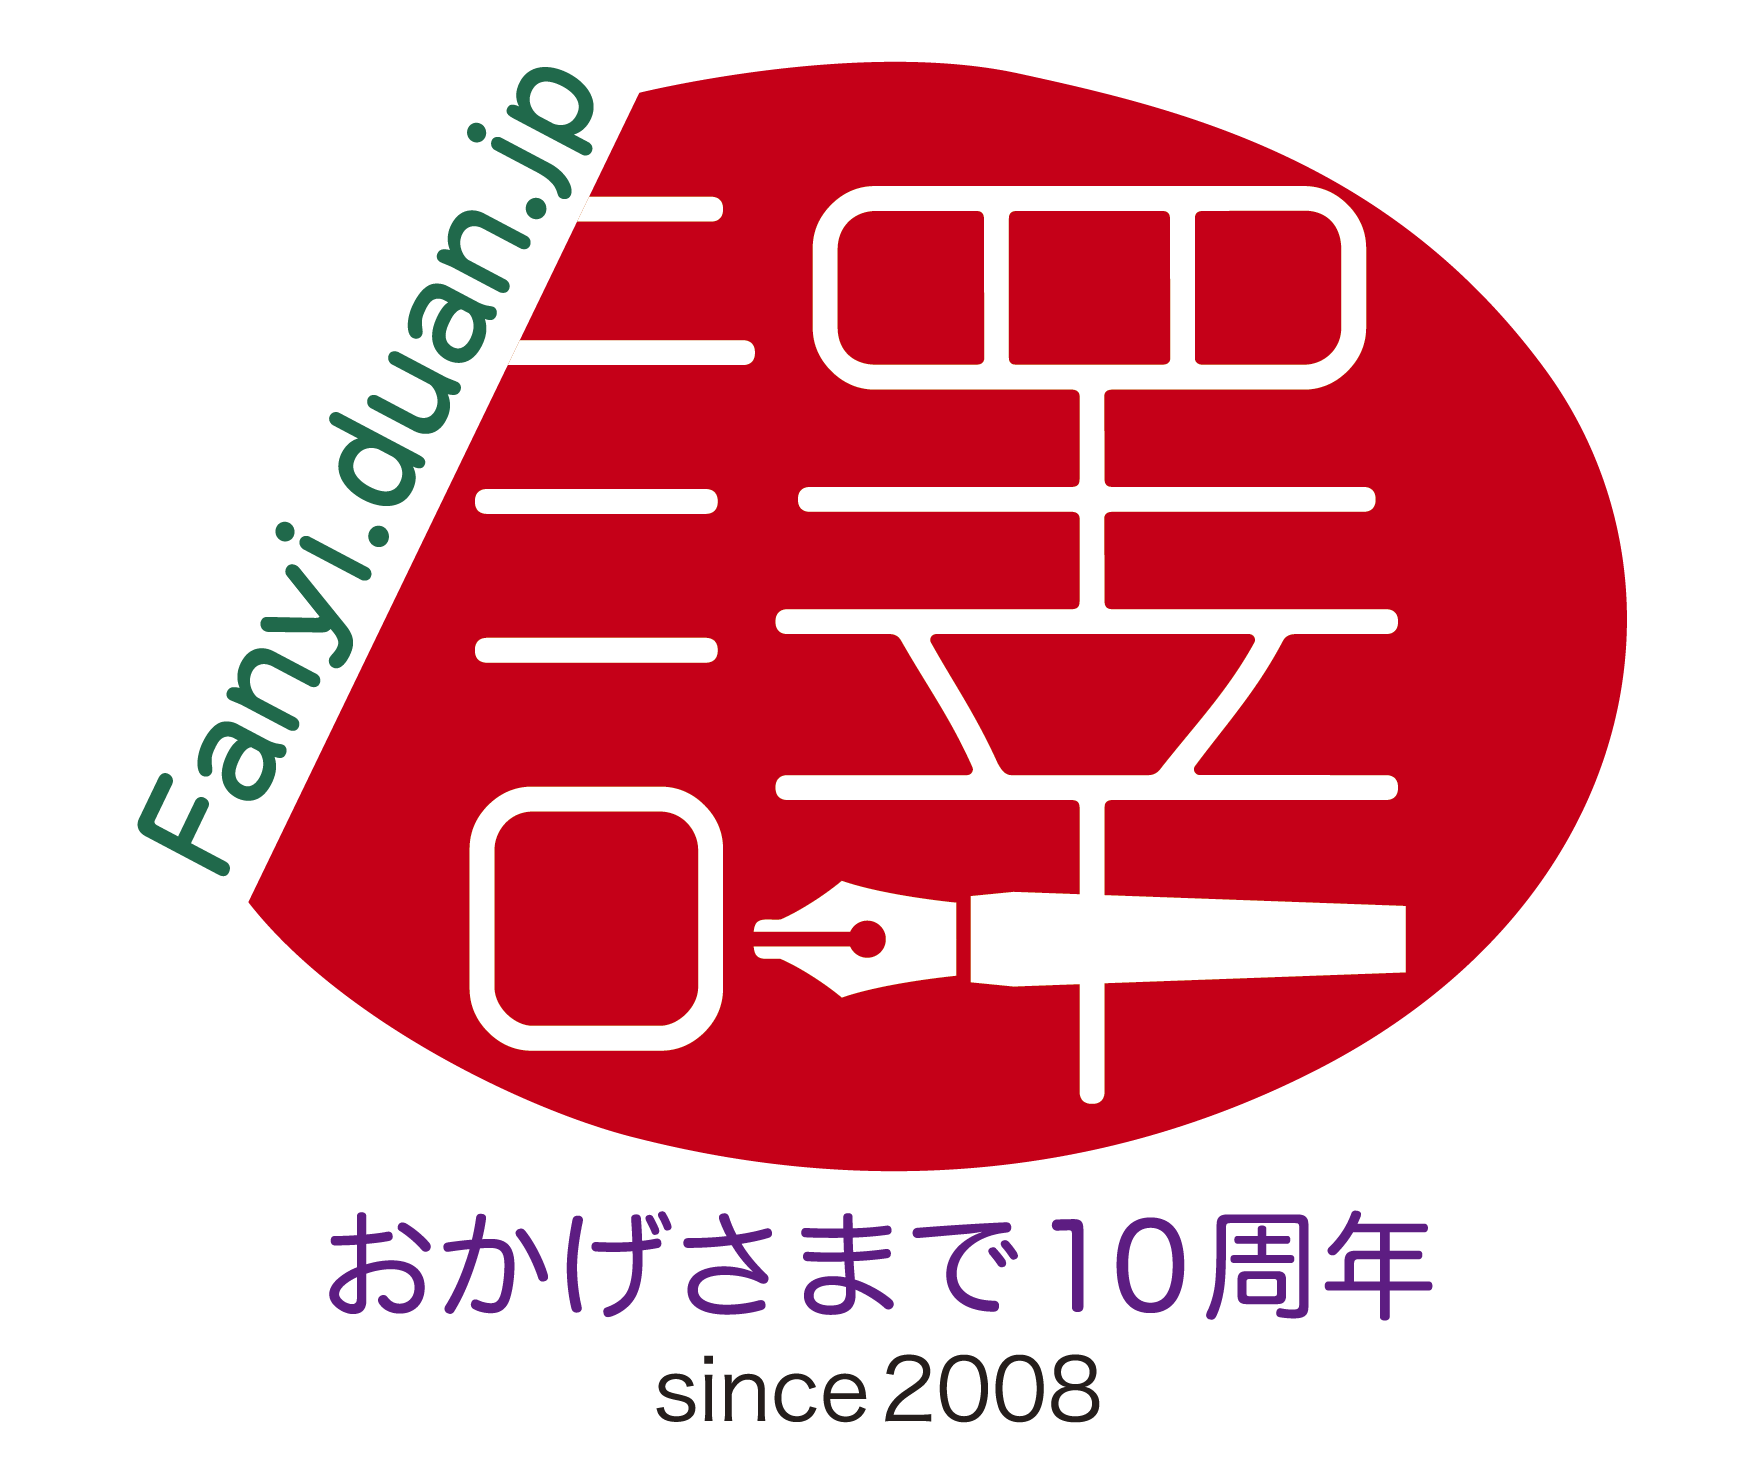 日中翻訳学院創立10周年の記念ロゴを公表、関連イベントも続々開催へ_d0027795_13334725.png